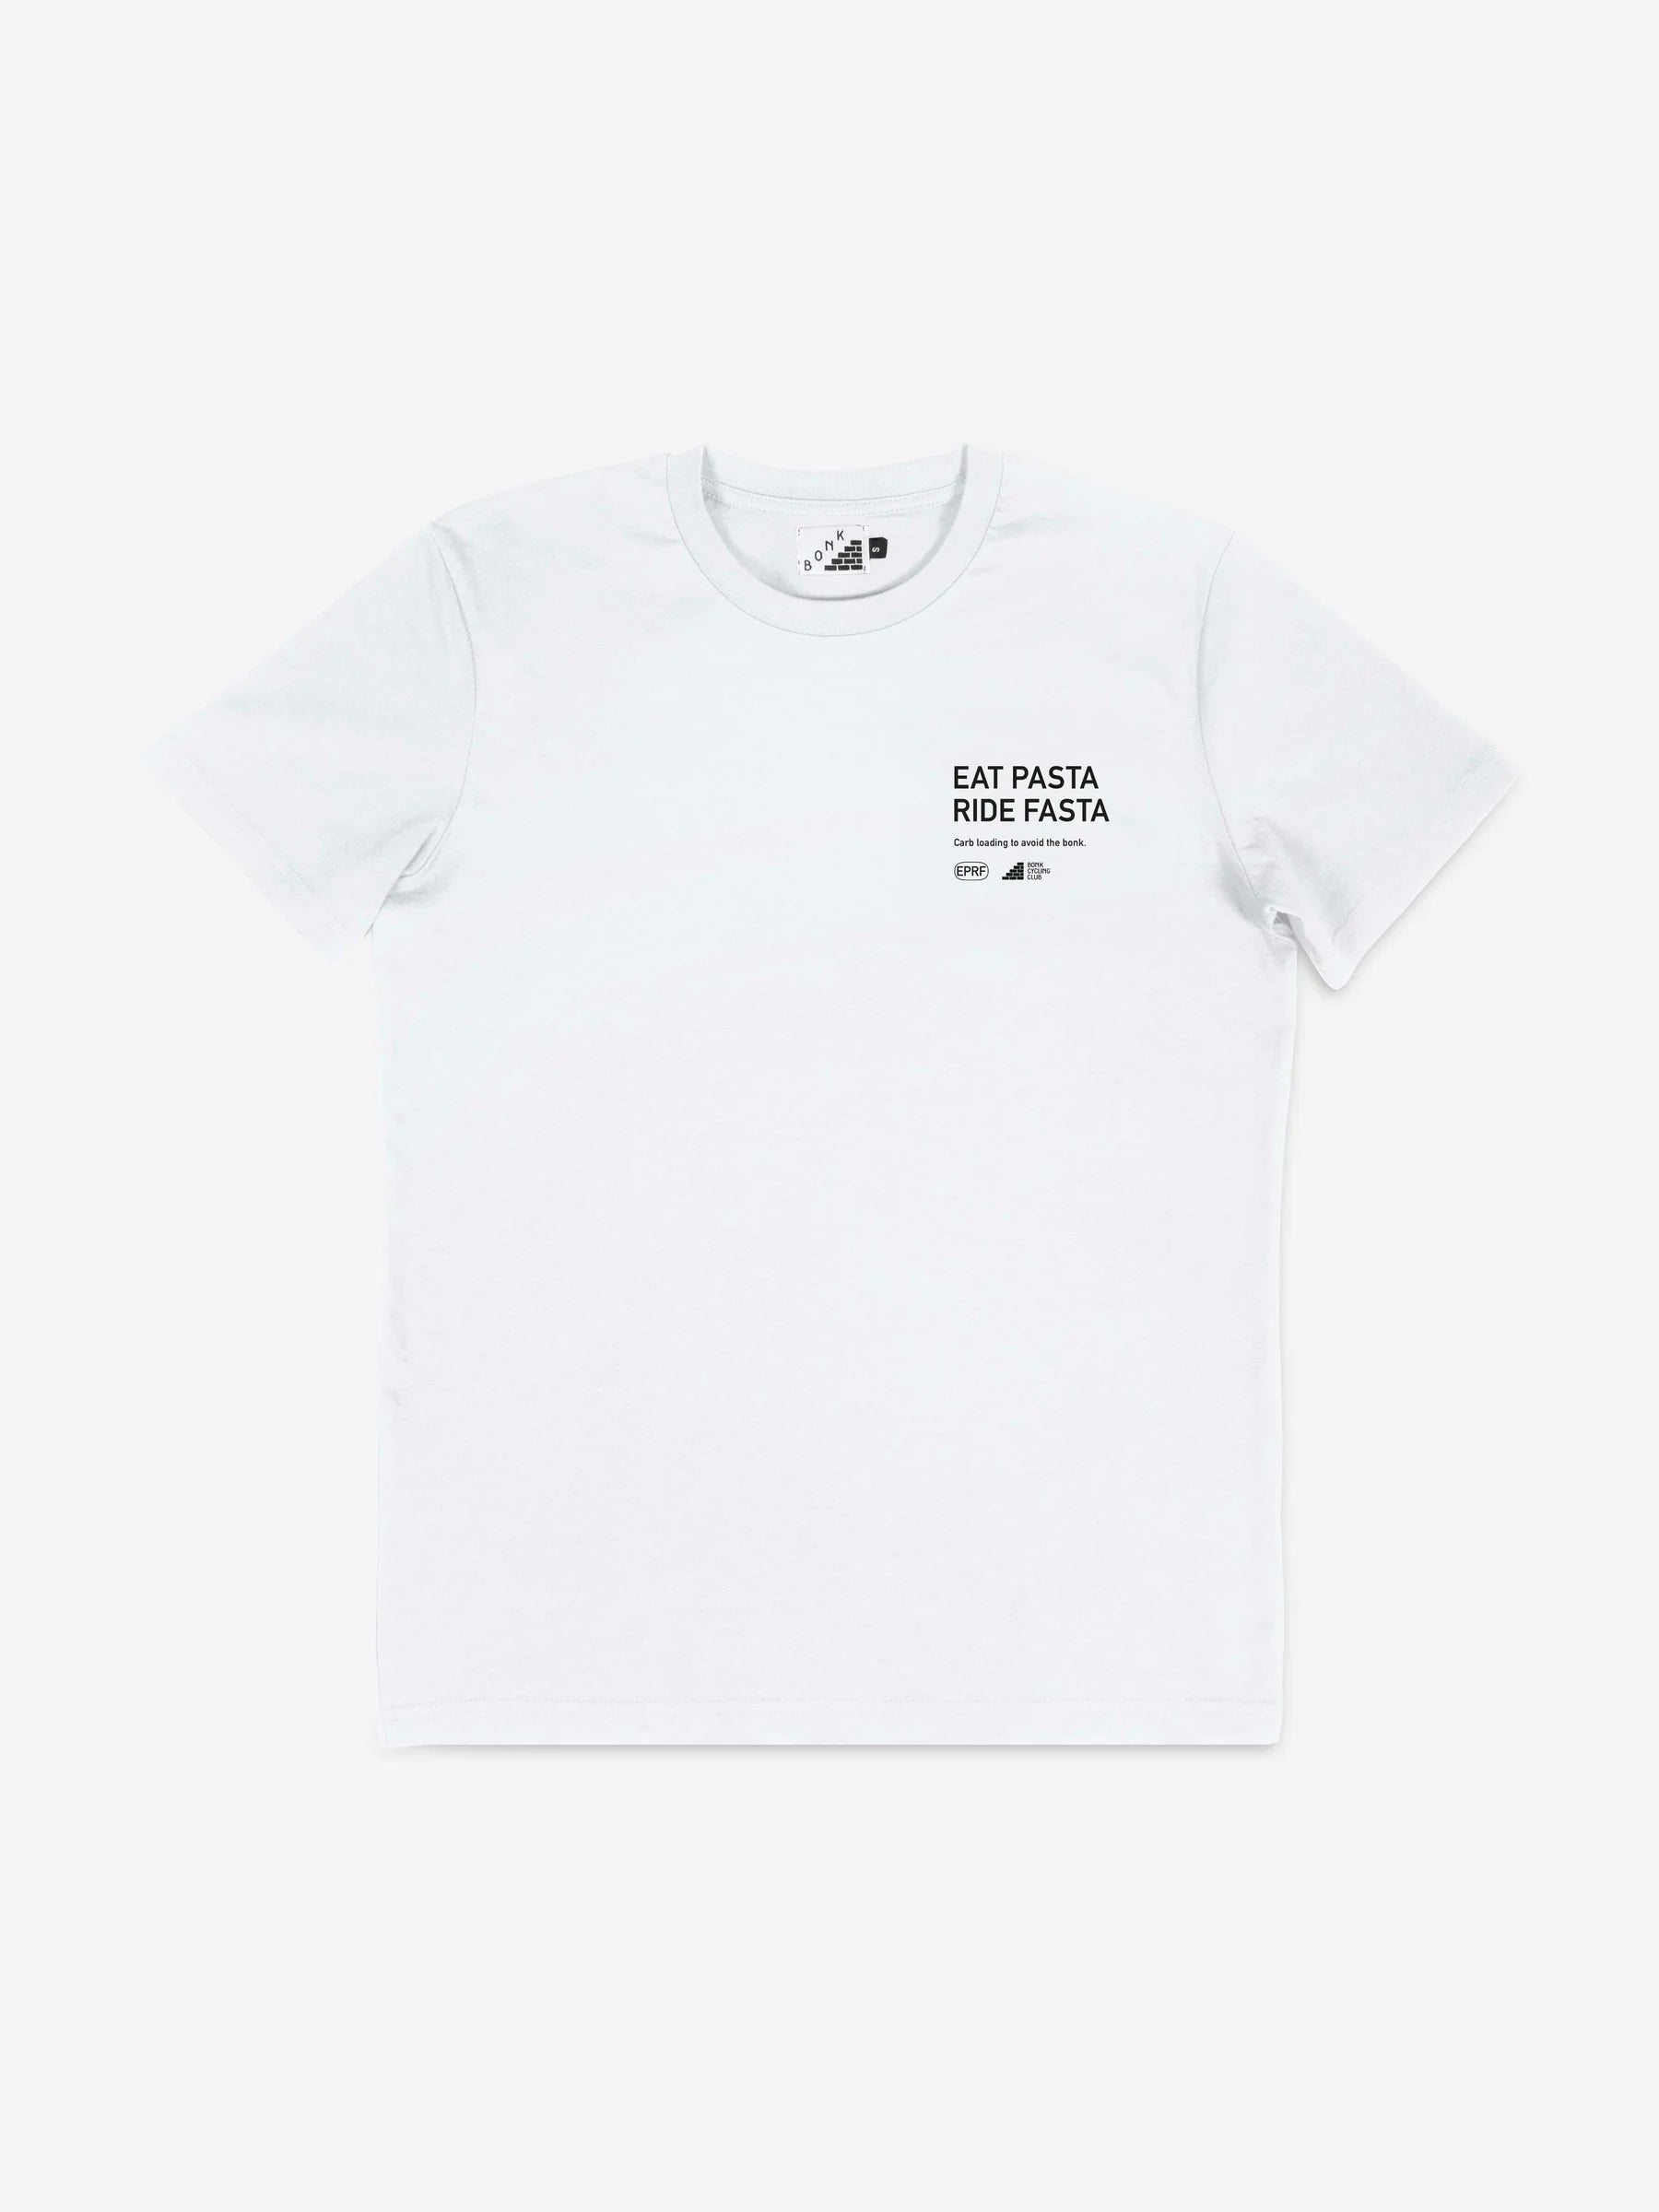 EPRF T-Shirt -  White